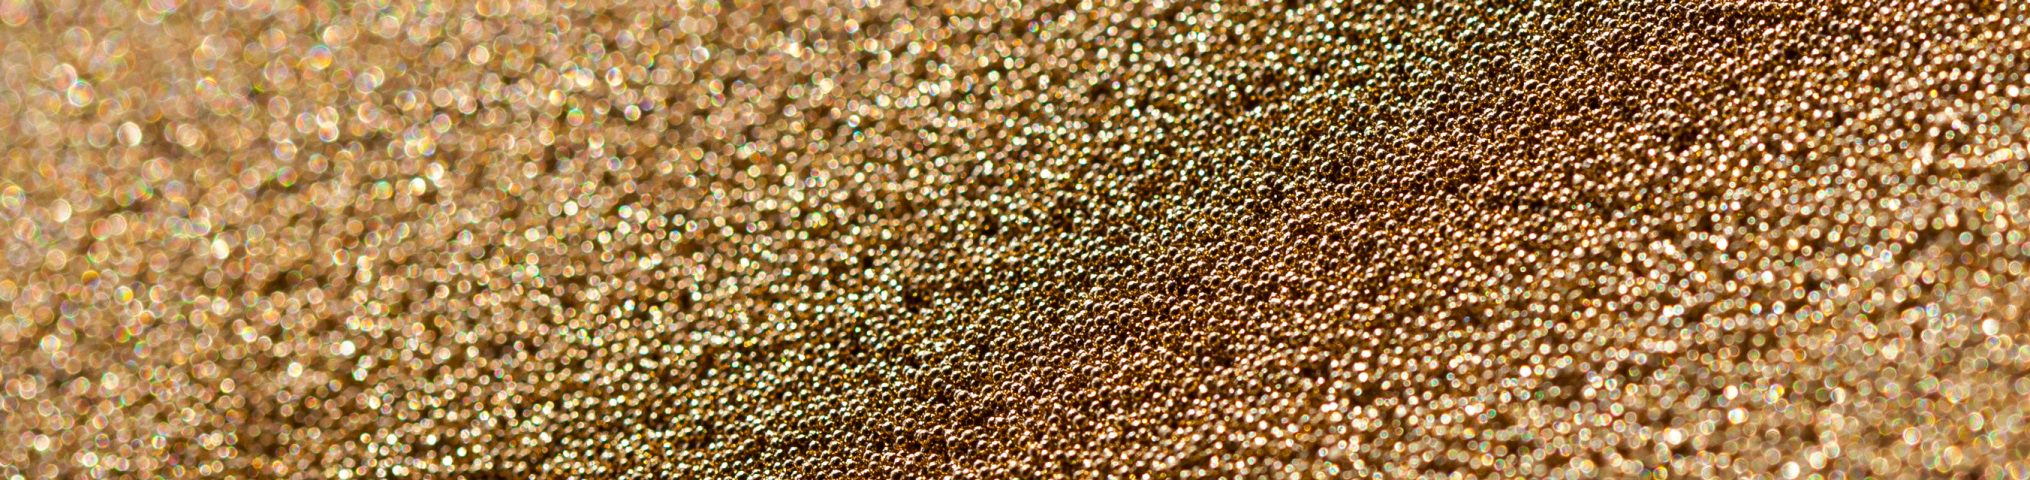 Zu sehen ist goldschimmernde Sinterbronze, die sich für den Einsatz an der Hinterkante eines Tragflügels eignet. Foto: Sebastian Olschewski/TU Braunschweig